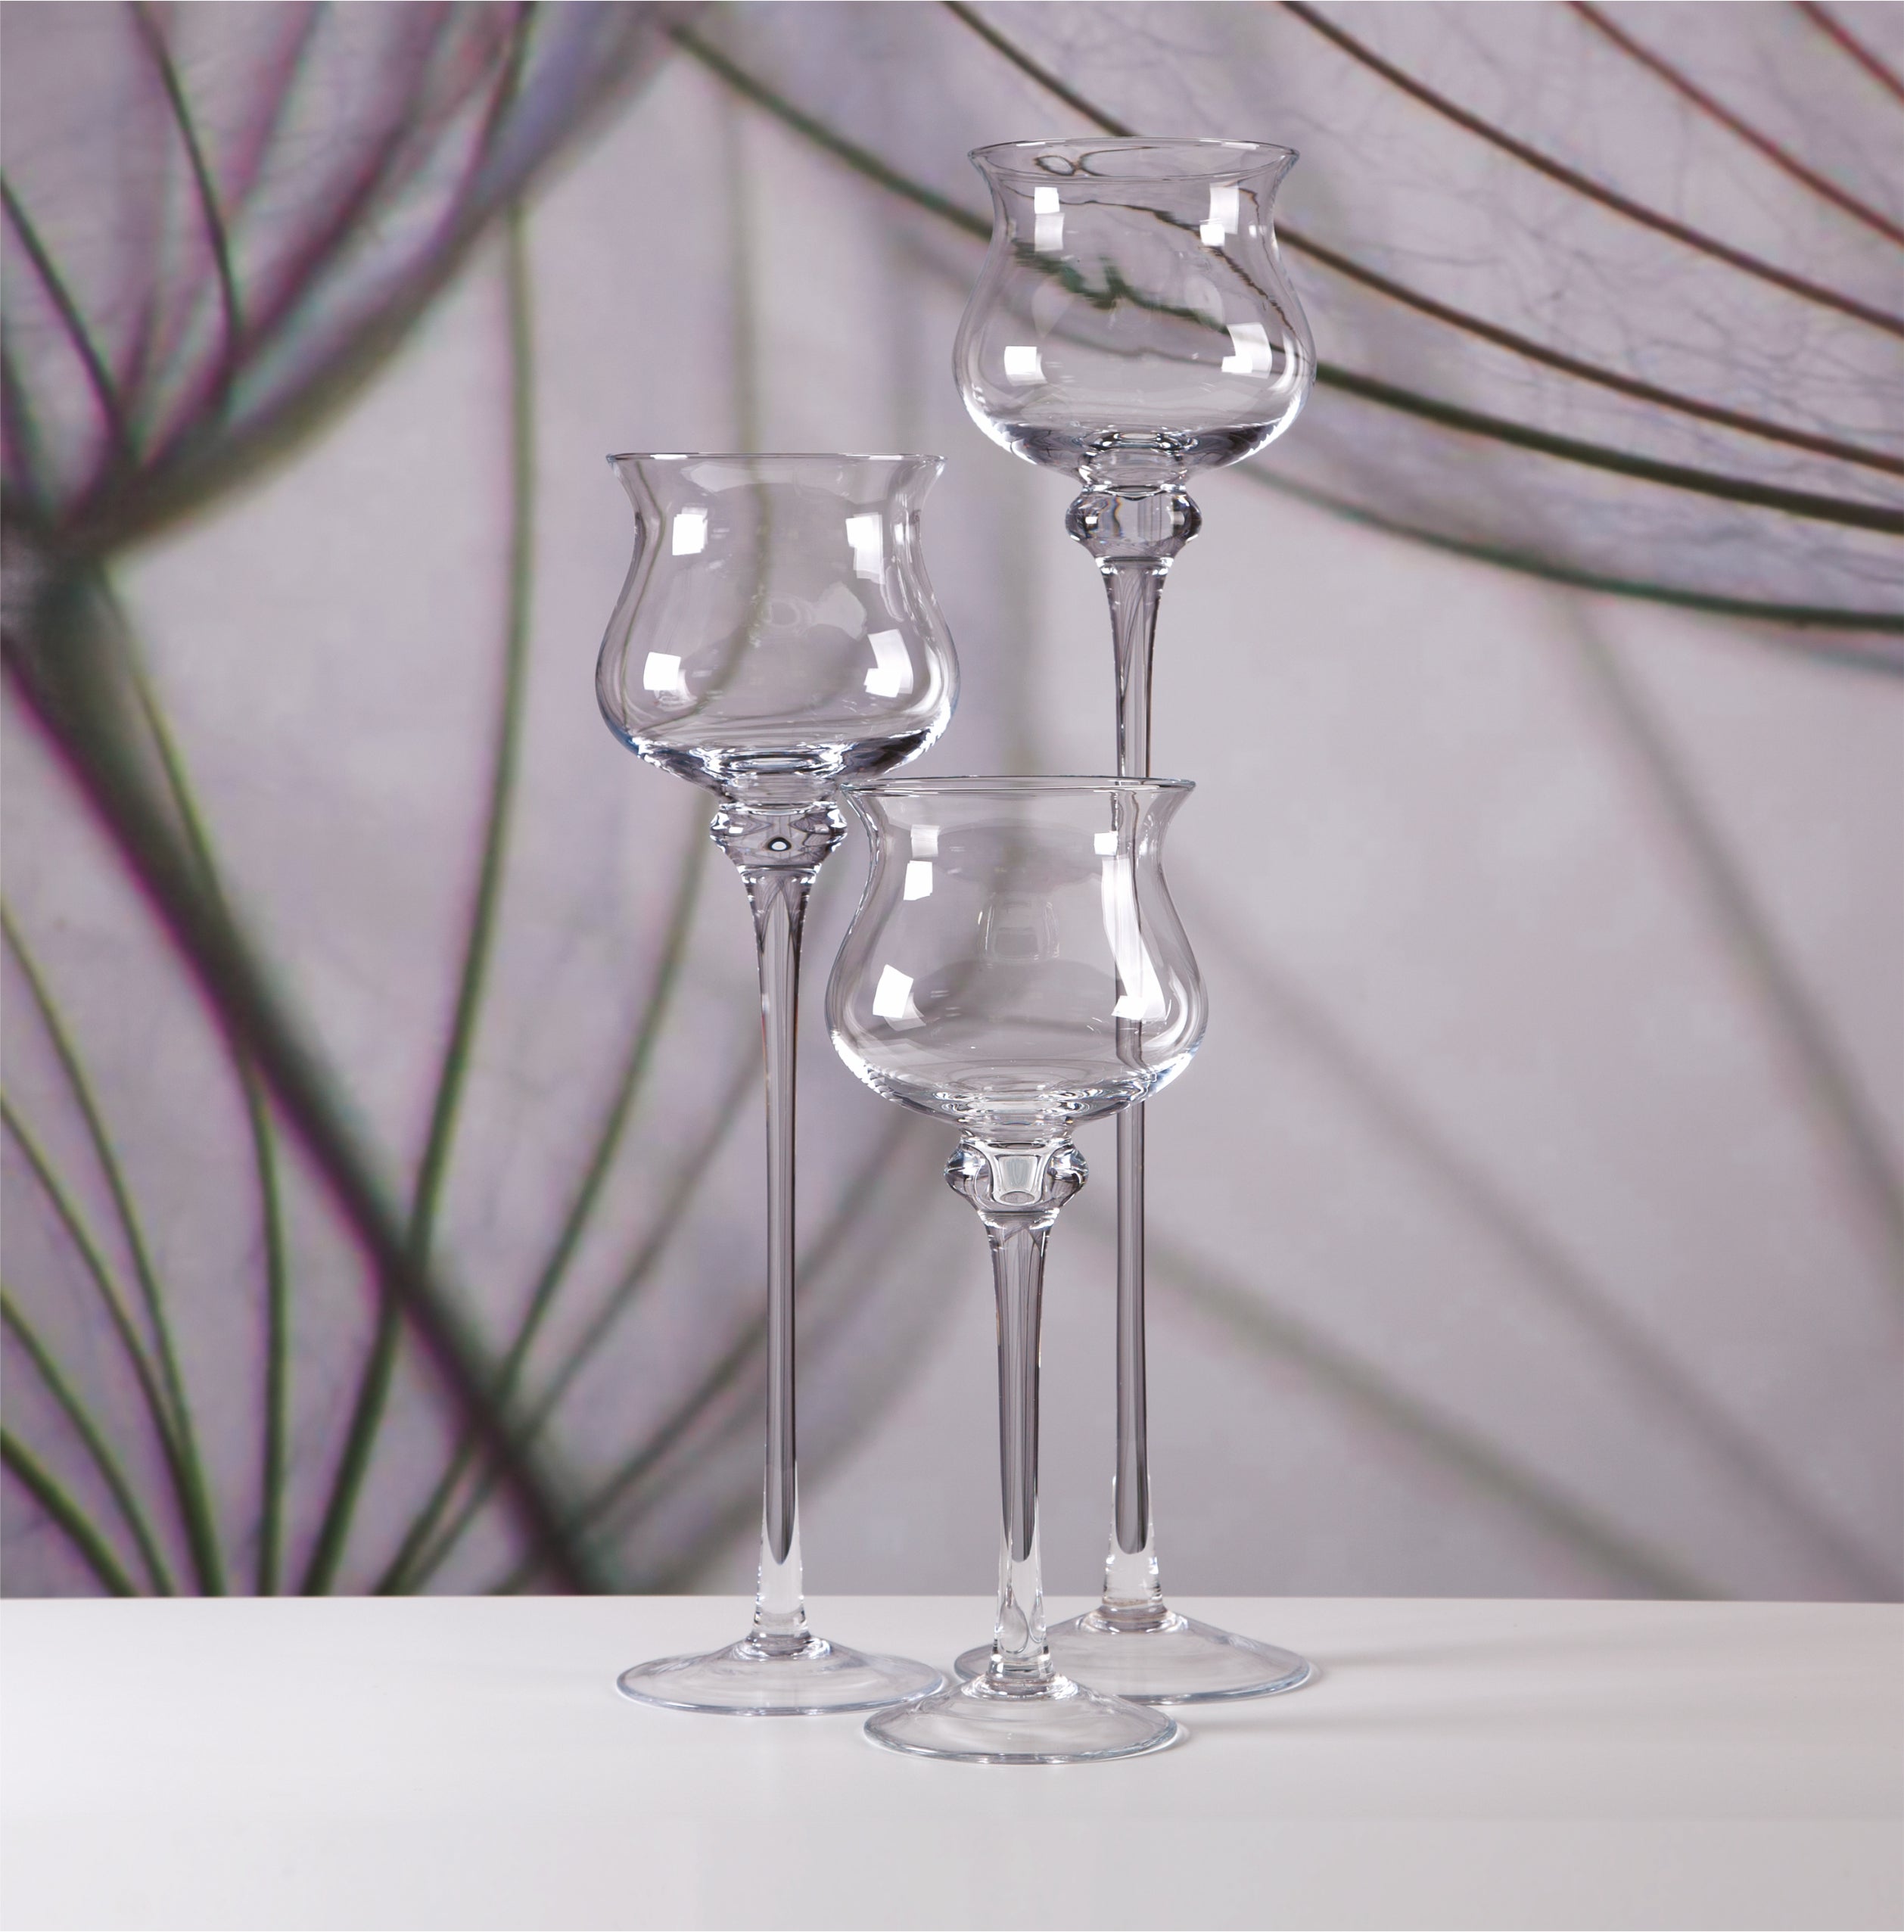 Sleek Design Glass Stemware: Wrześniak Glassworks’s Sophisticated Collection